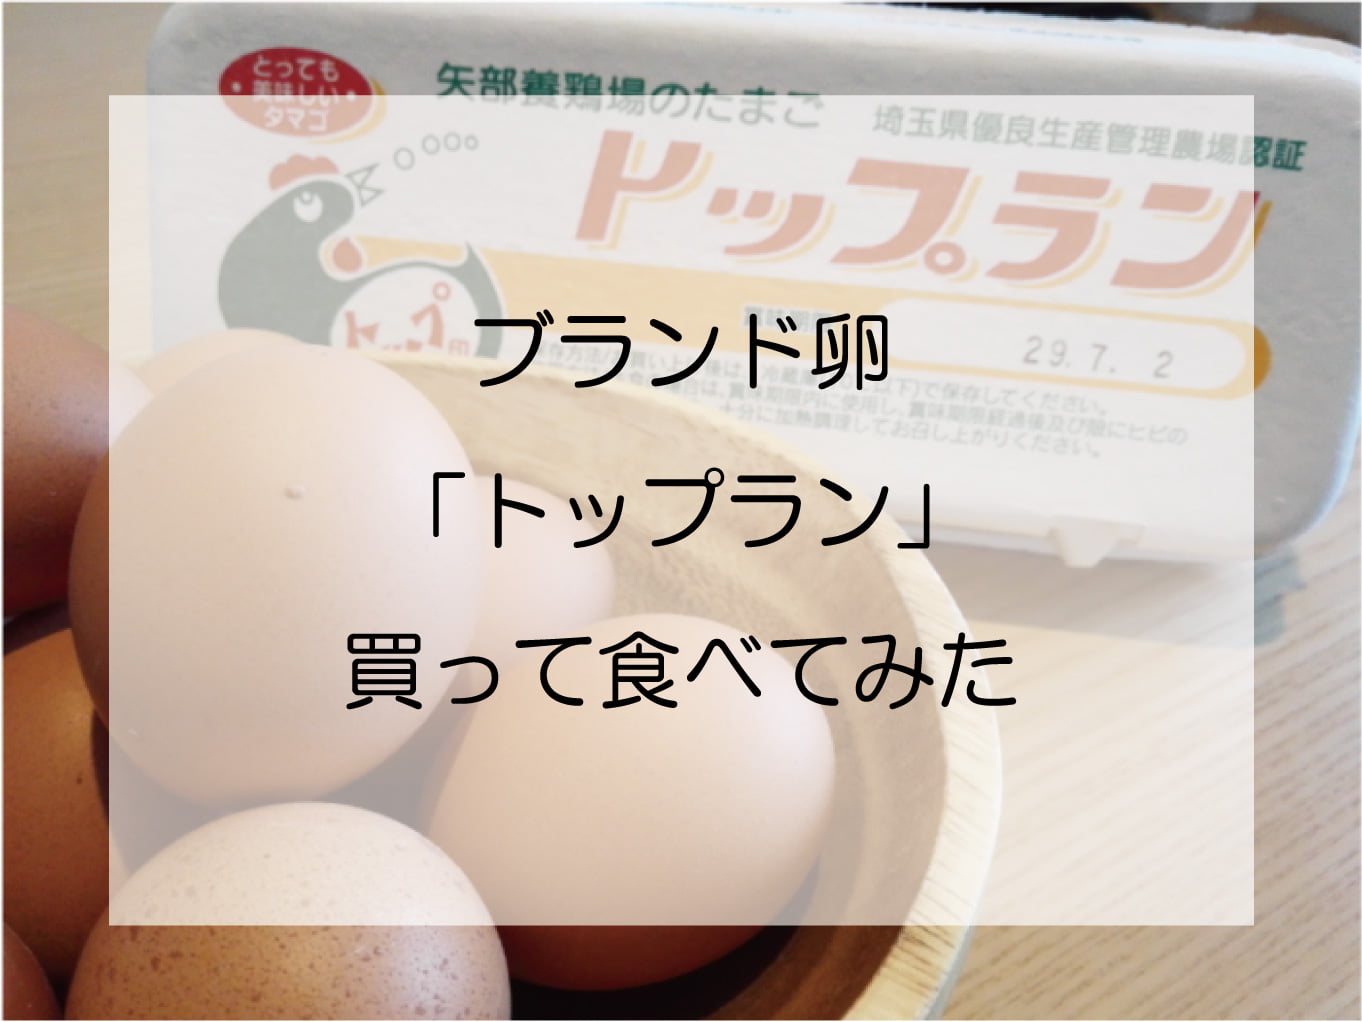 「トップラン」の激ウマ卵を求めて川島町の矢部養鶏場に行ってみた